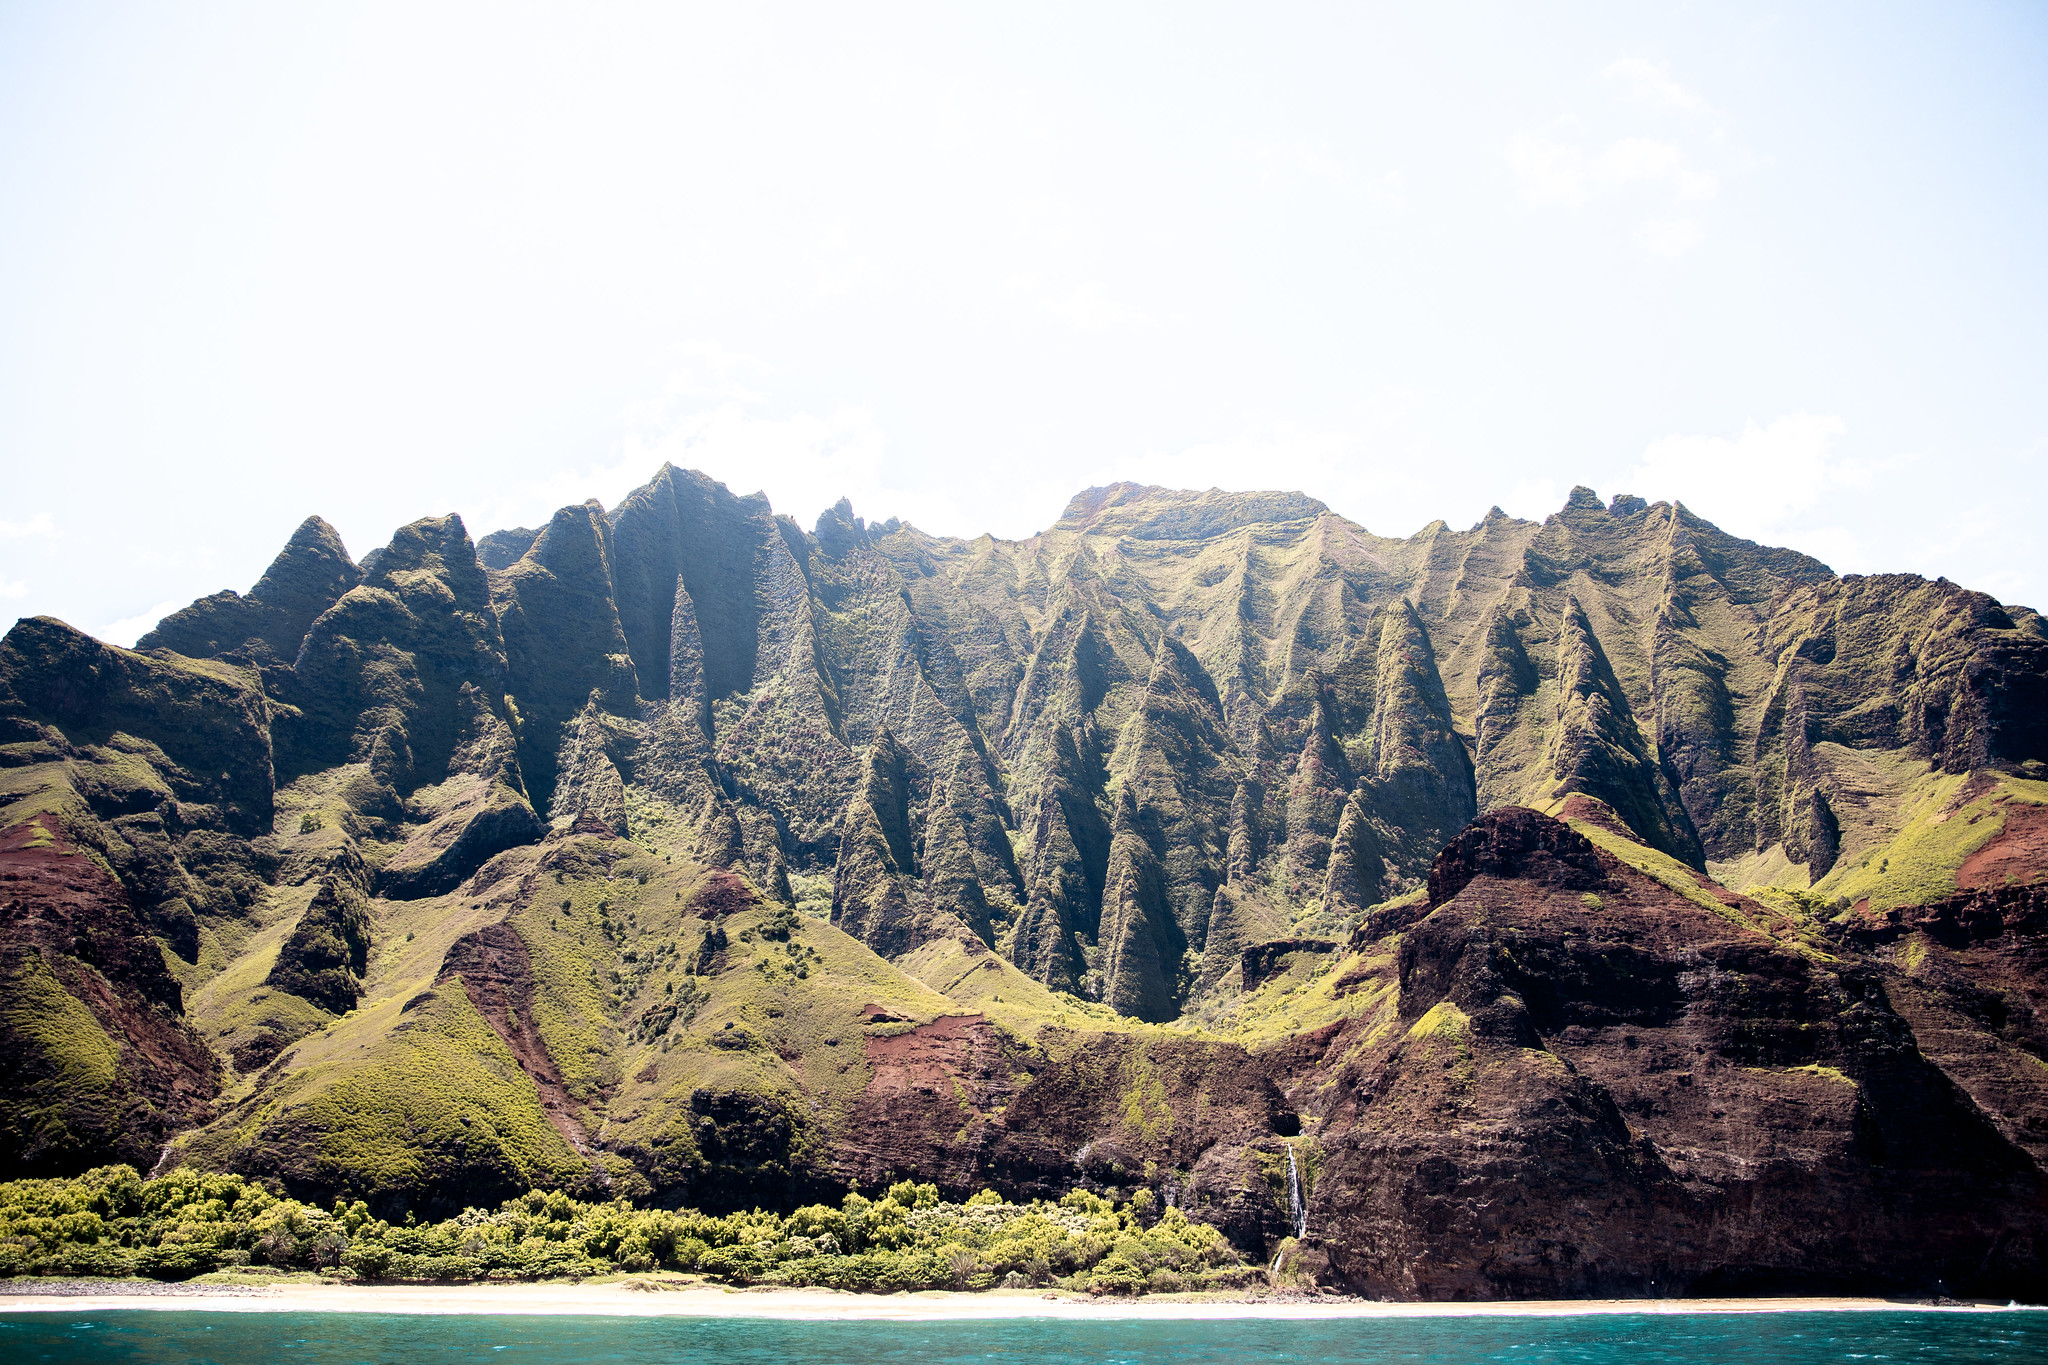 Na Pali Coast Sea Cave and Snorkel with Na Pali Pirates - Kauai Things to do, Kauai Travel, Kauai Activities, Kauai Must do, Kauai Travel Tips, Na Pali Coast Tour, Na Pali Coast | Wanderlustyle.com